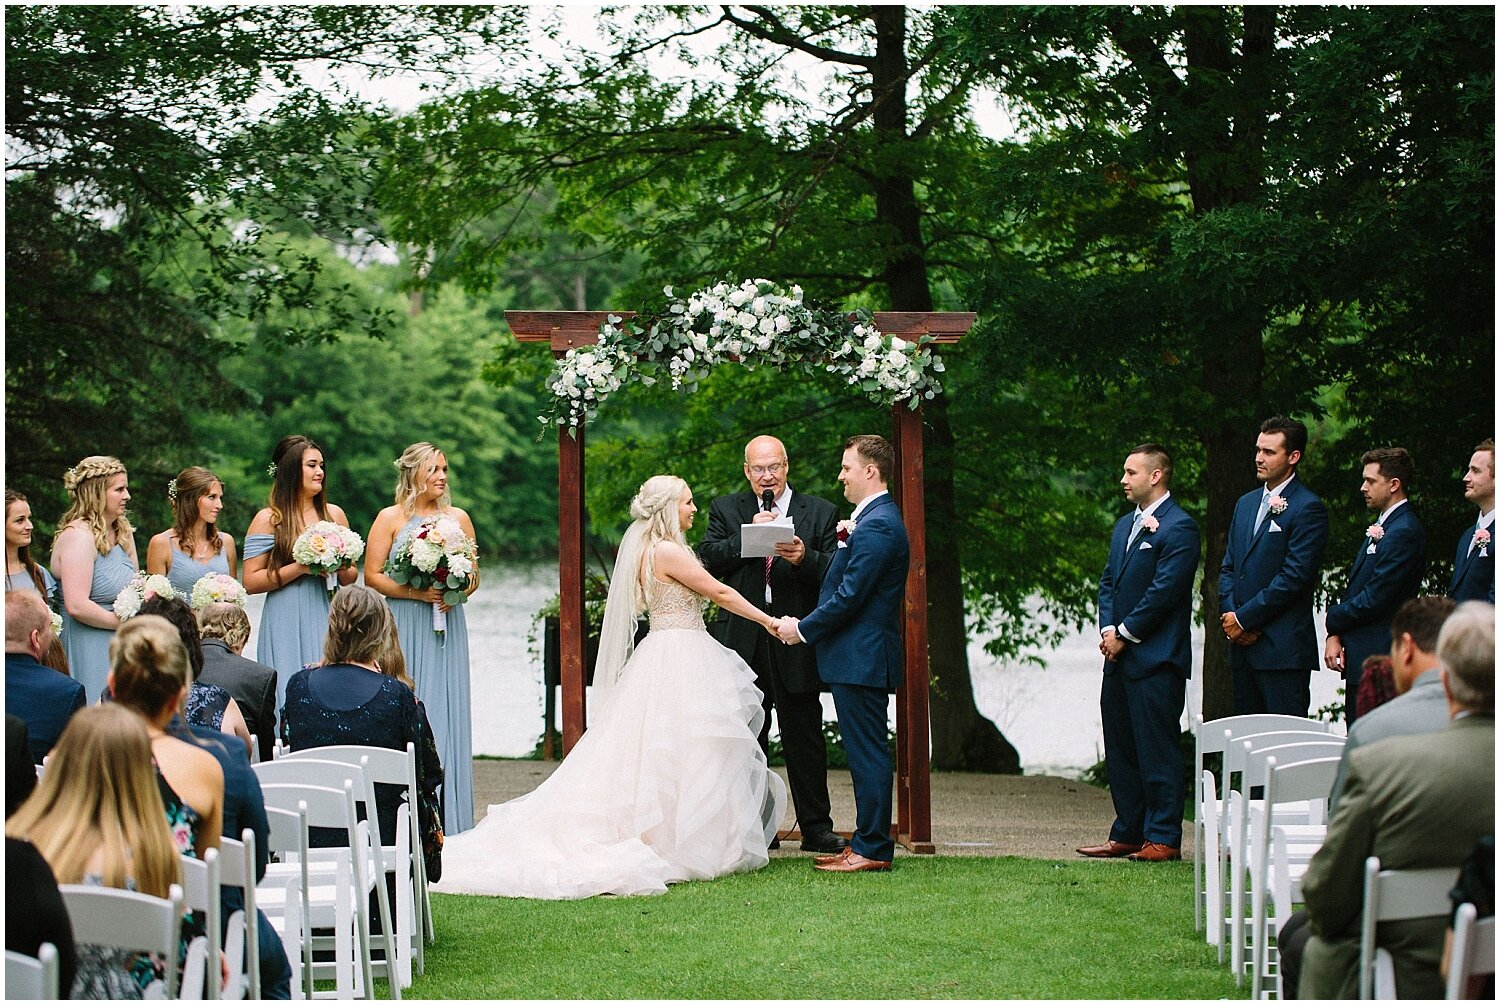  outdoor wedding ceremony in Minnesota 